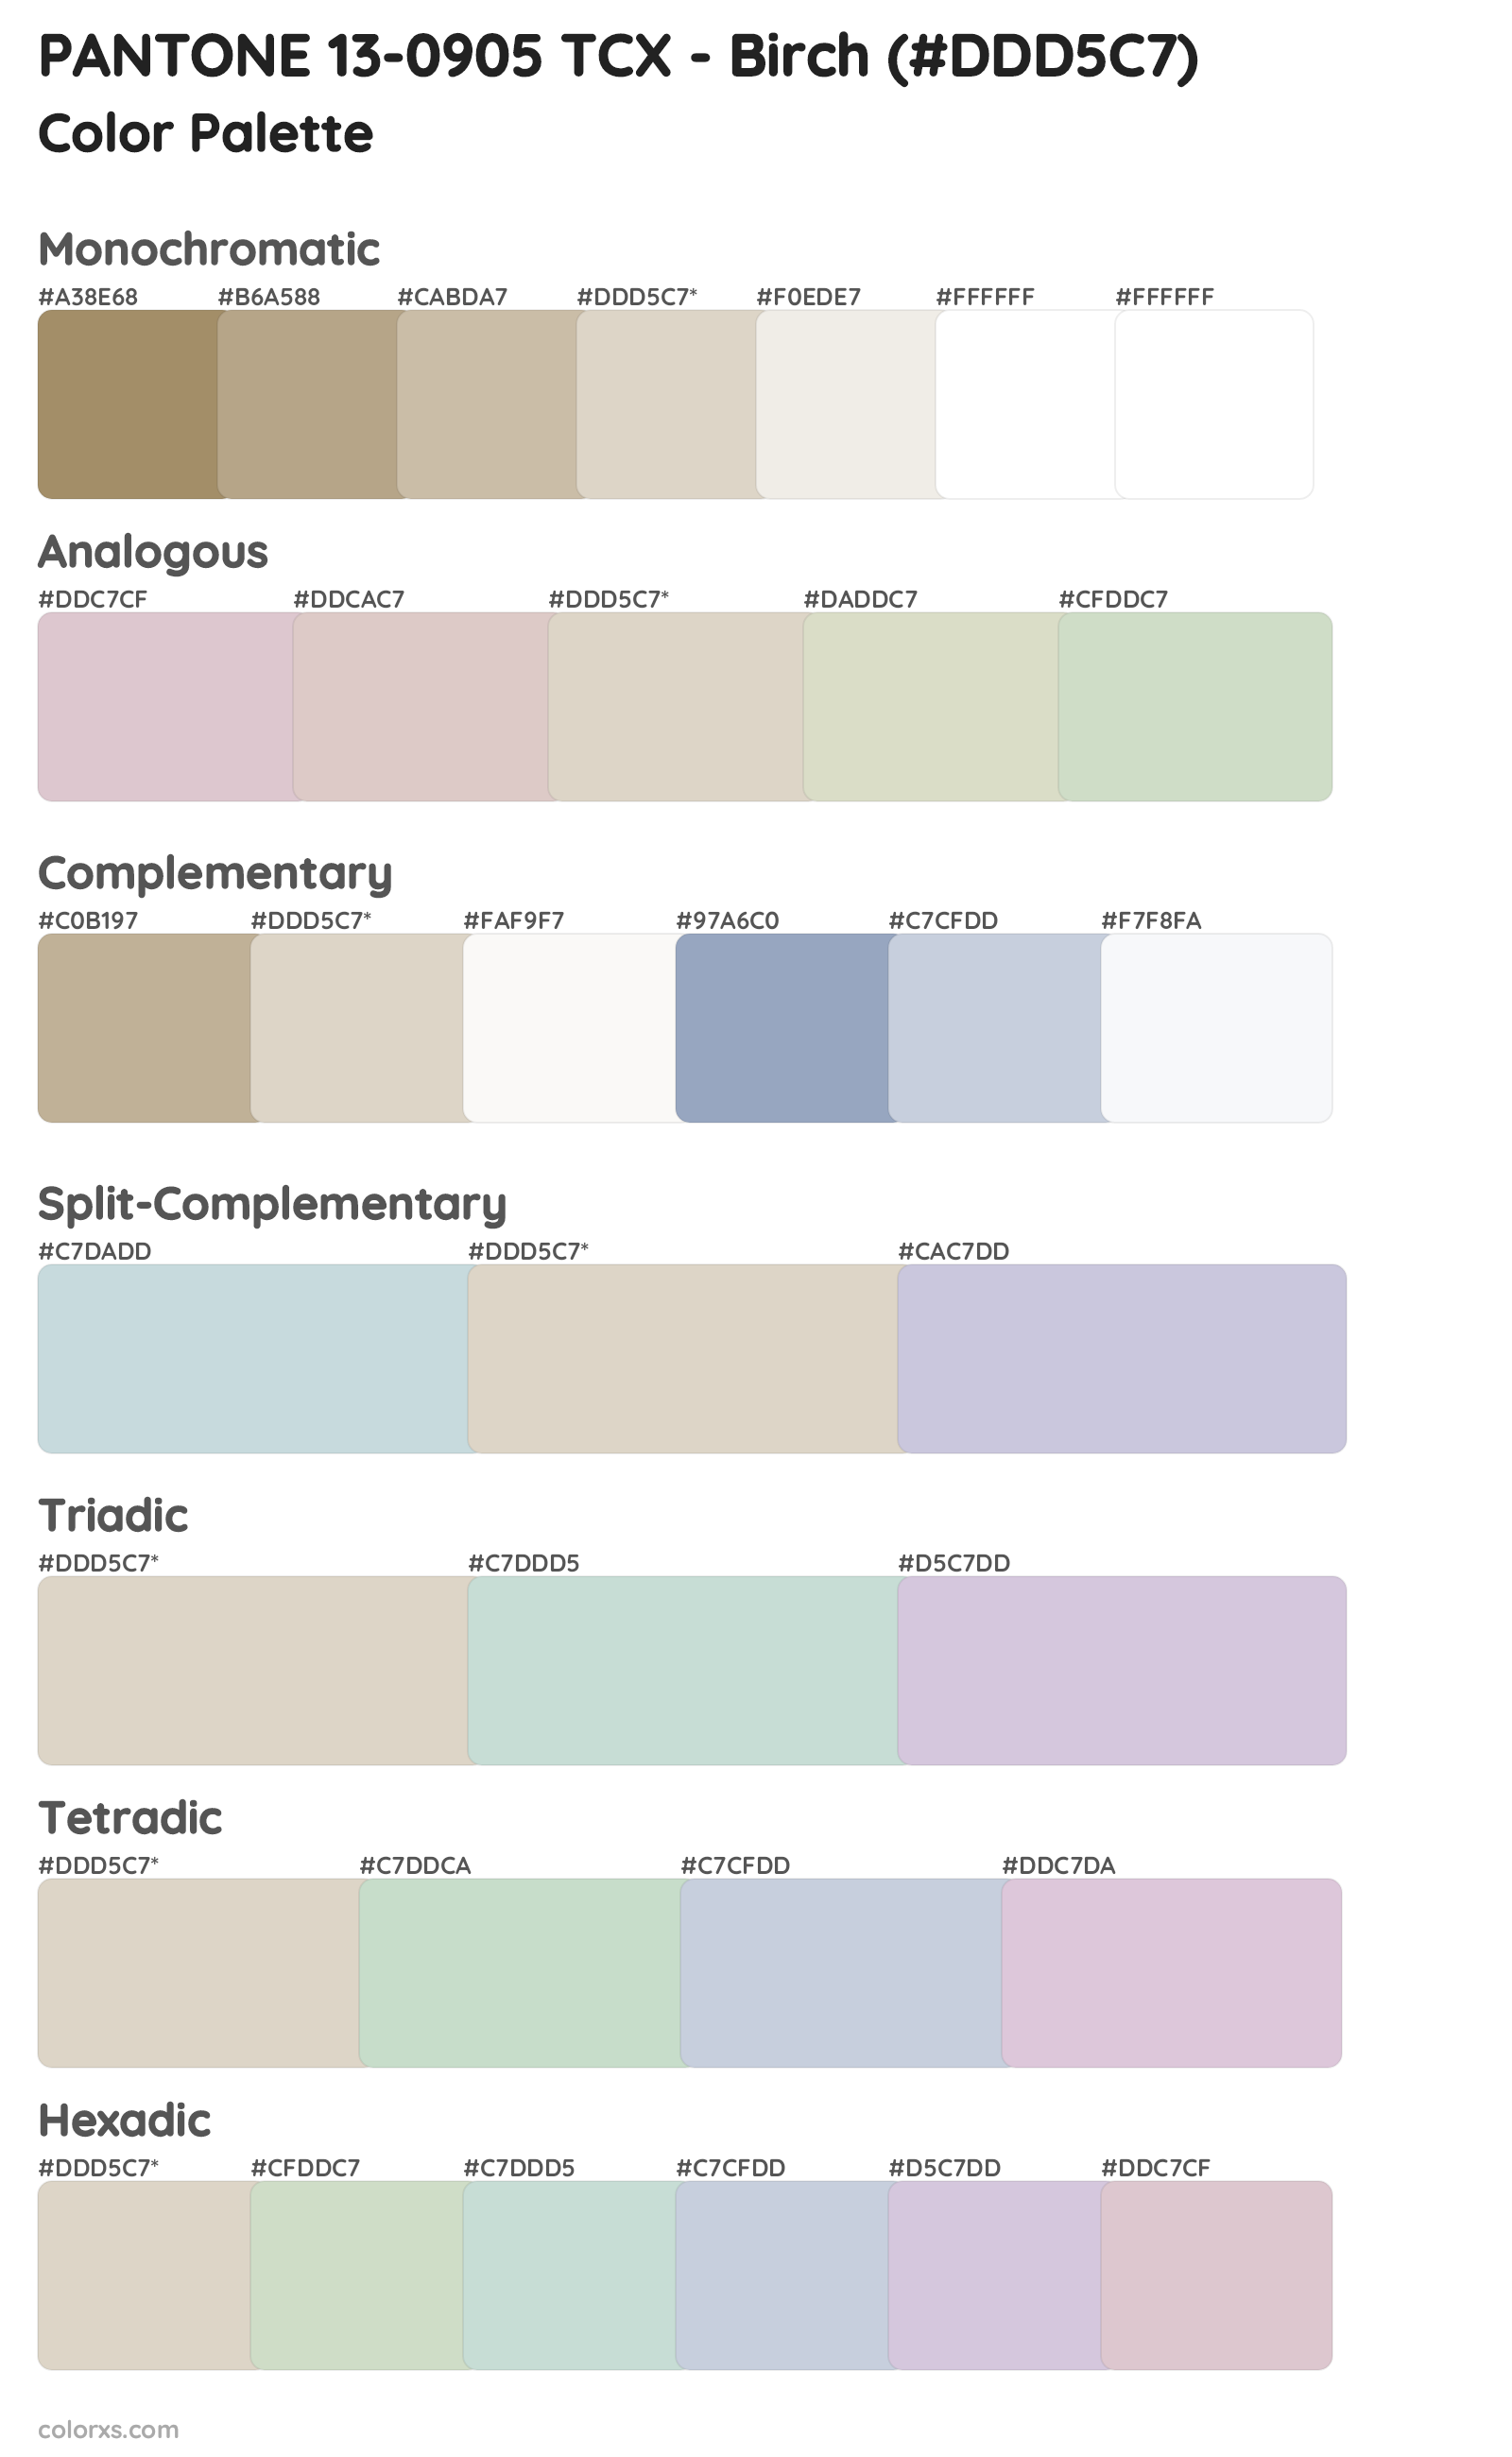 PANTONE 13-0905 TCX - Birch Color Scheme Palettes